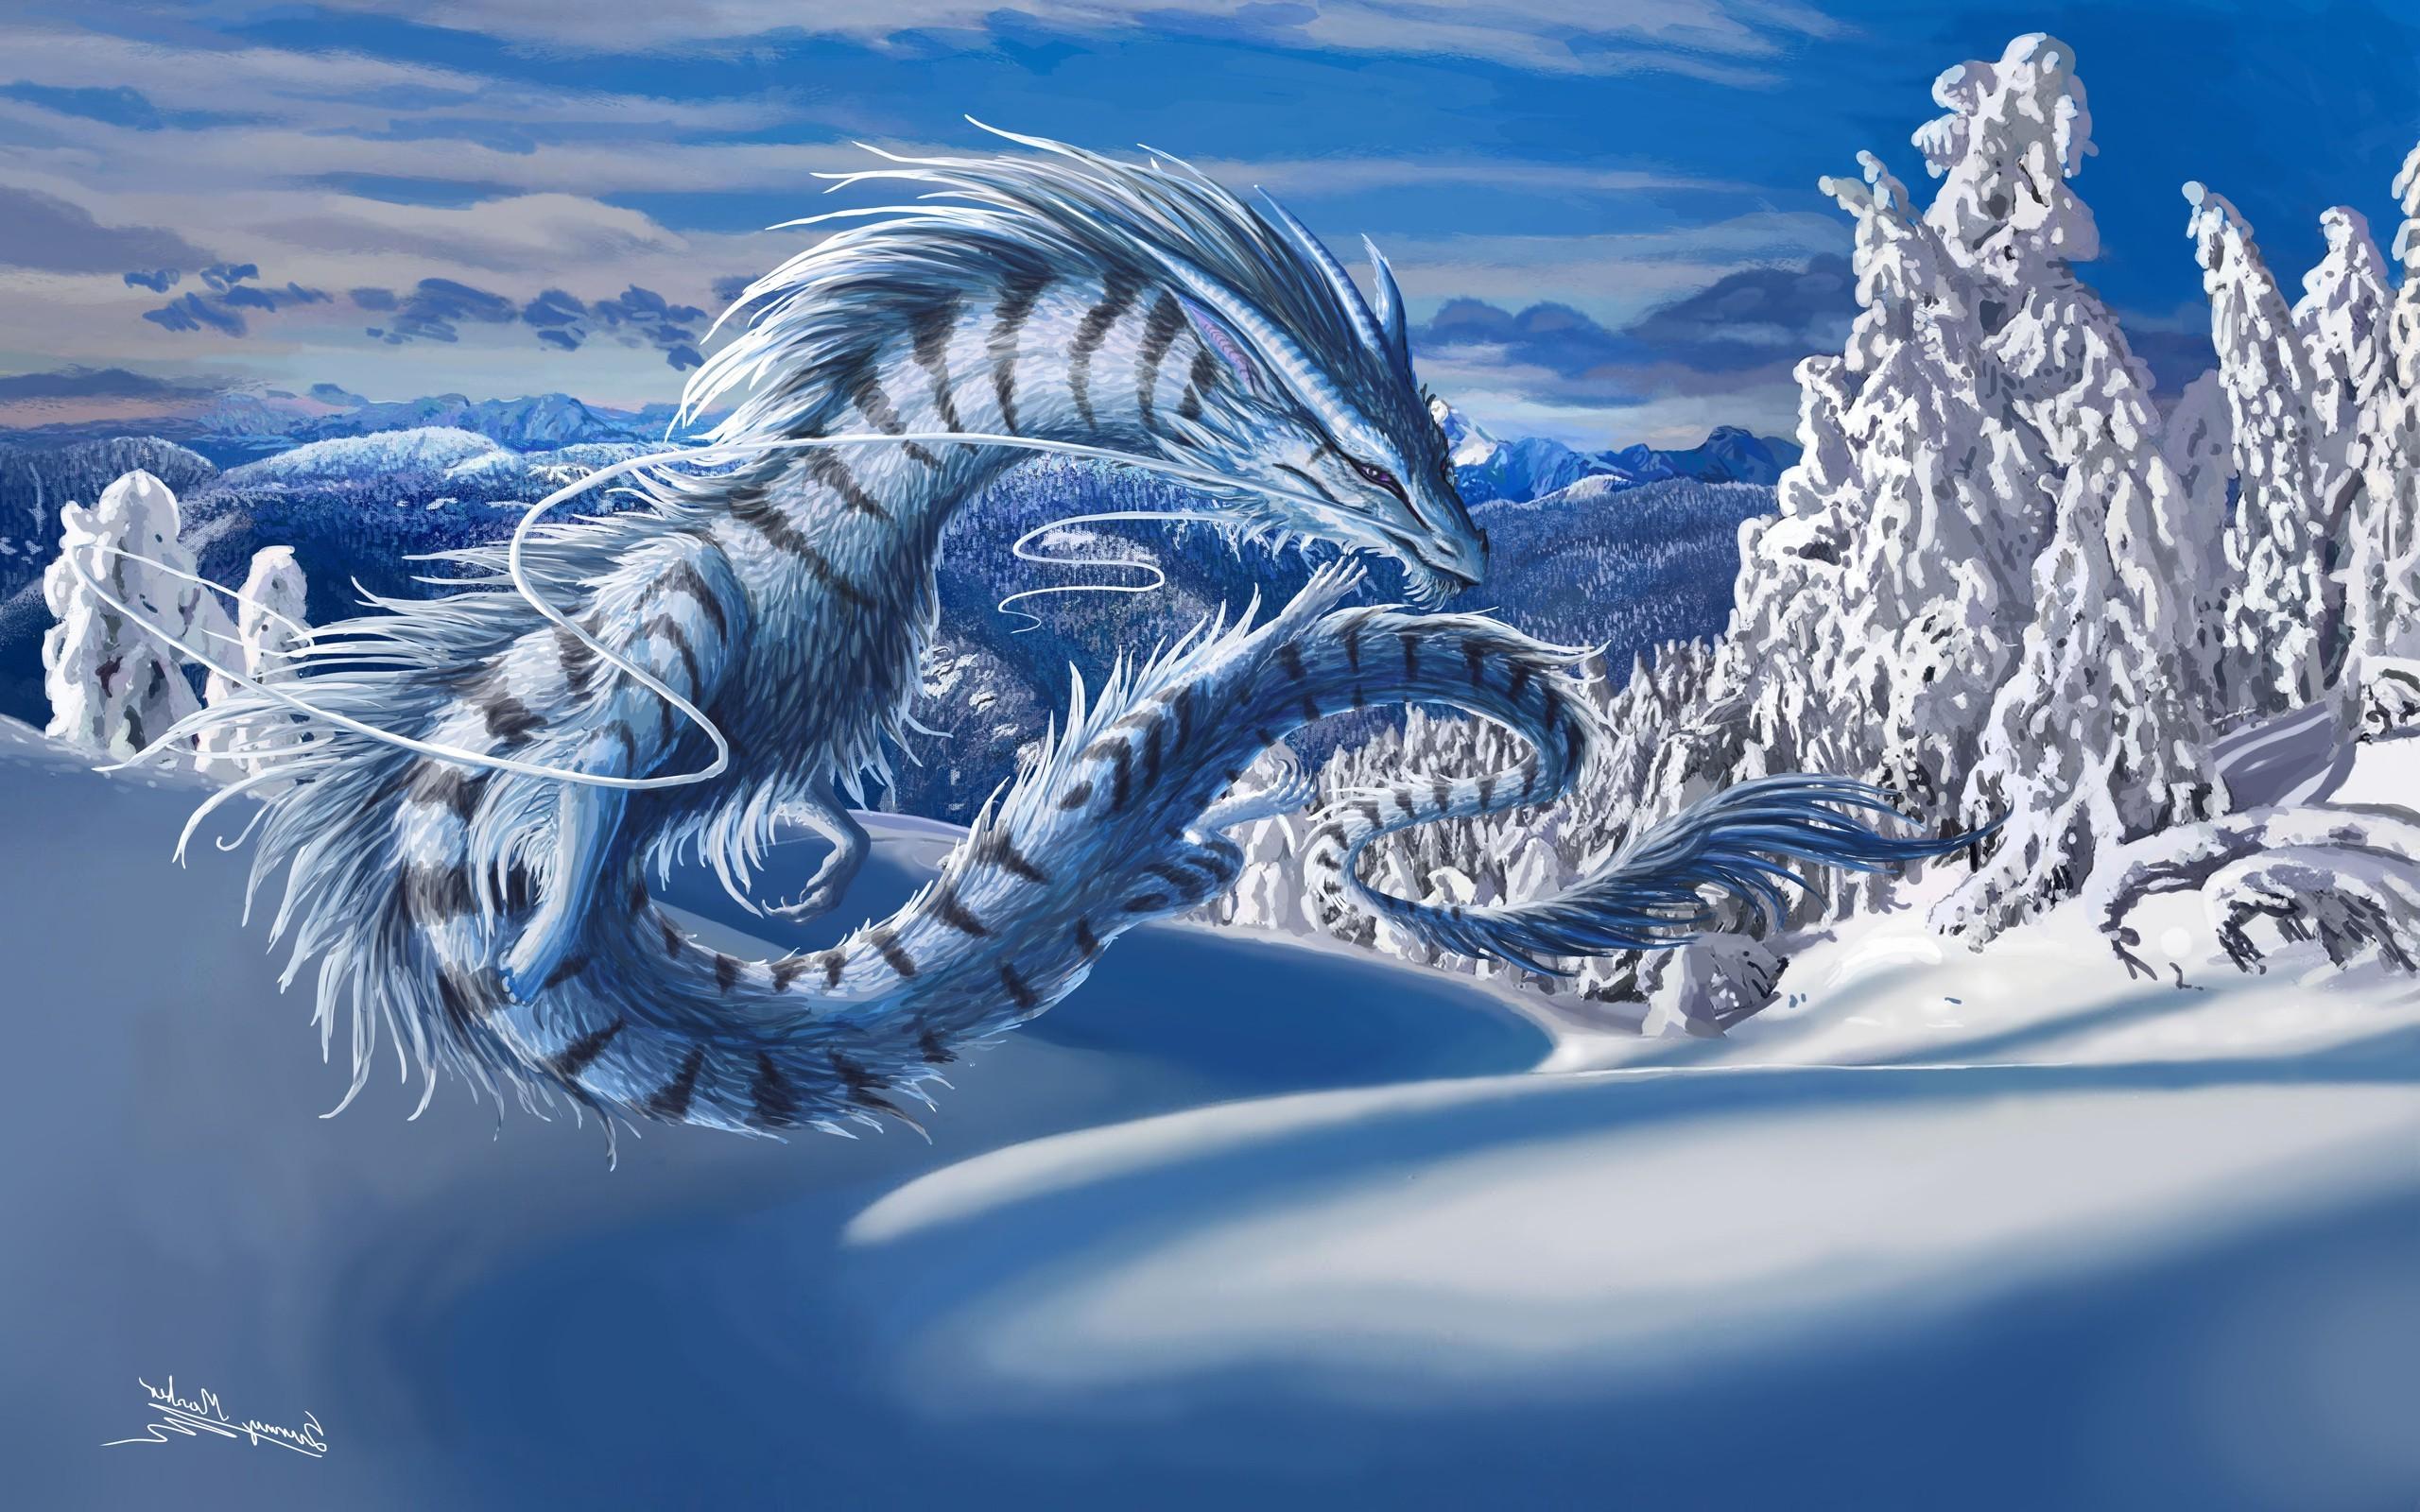 dragon, Digital Art, Fantasy Art .wallup.net